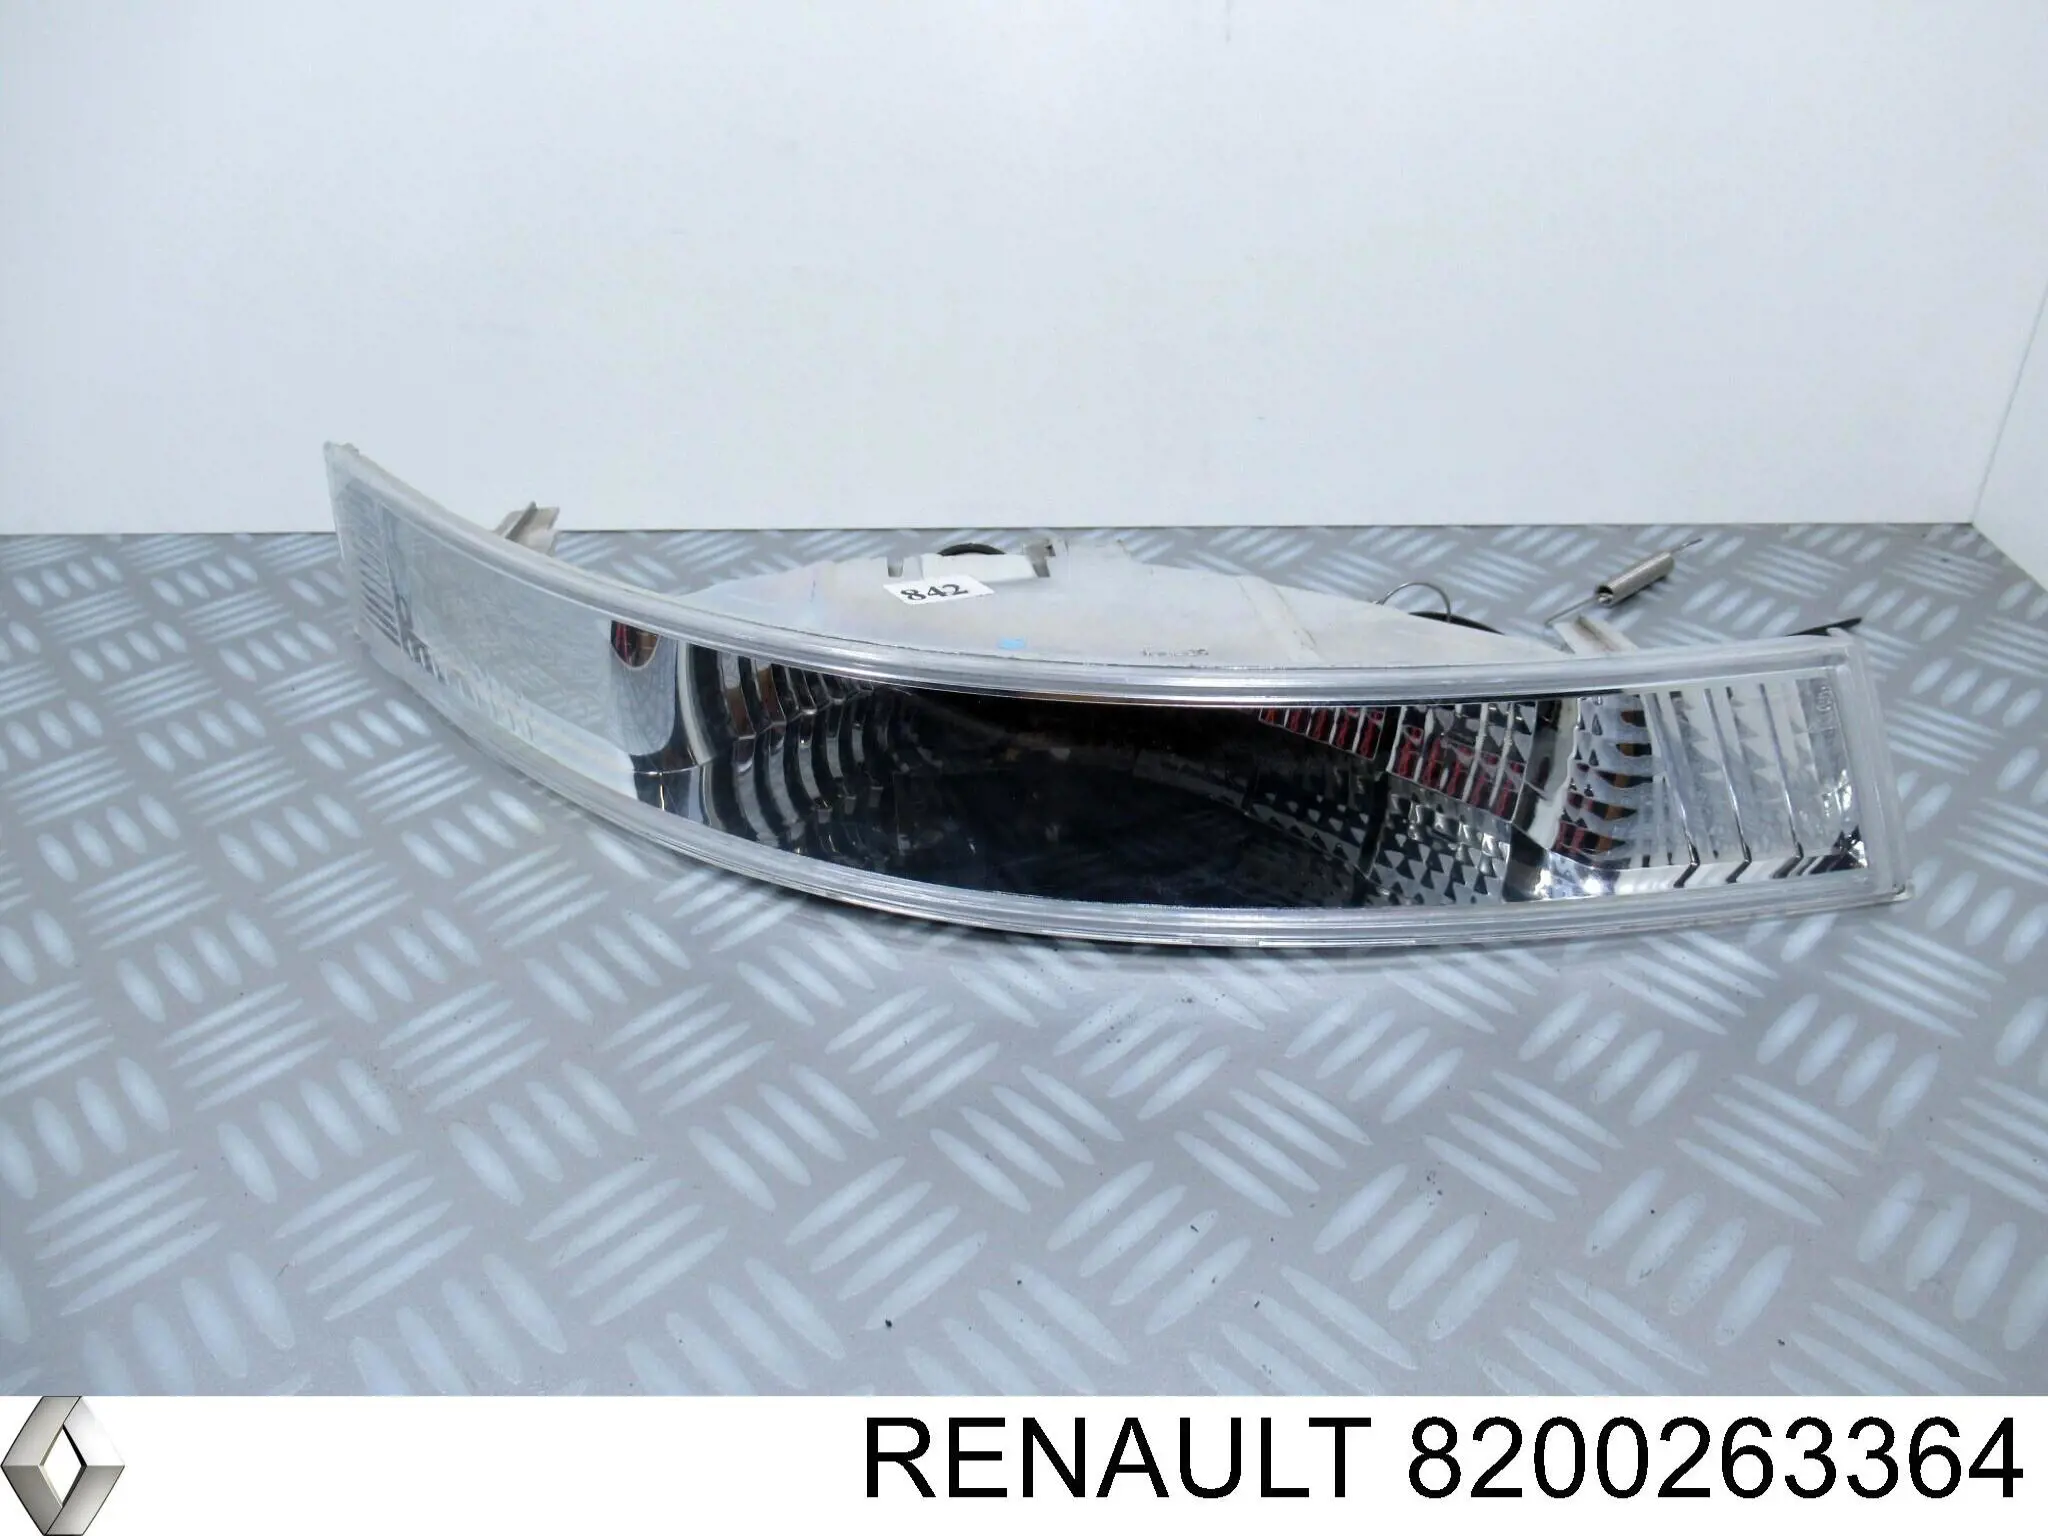 8200263364 Renault (RVI) pisca-pisca direito